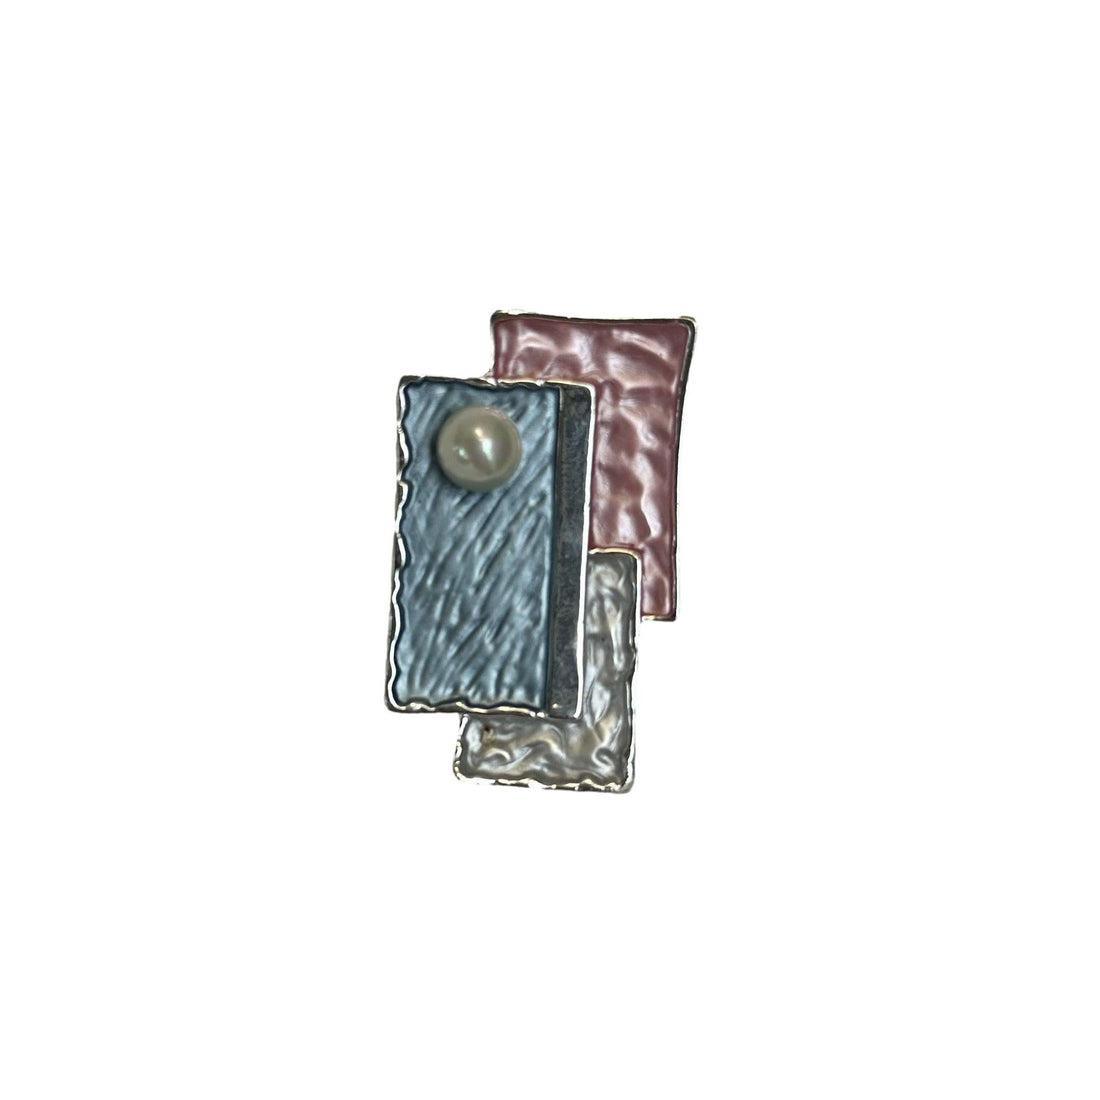 Seidel Moden Broschen-Magnet 2. Mode von Seidel Moden